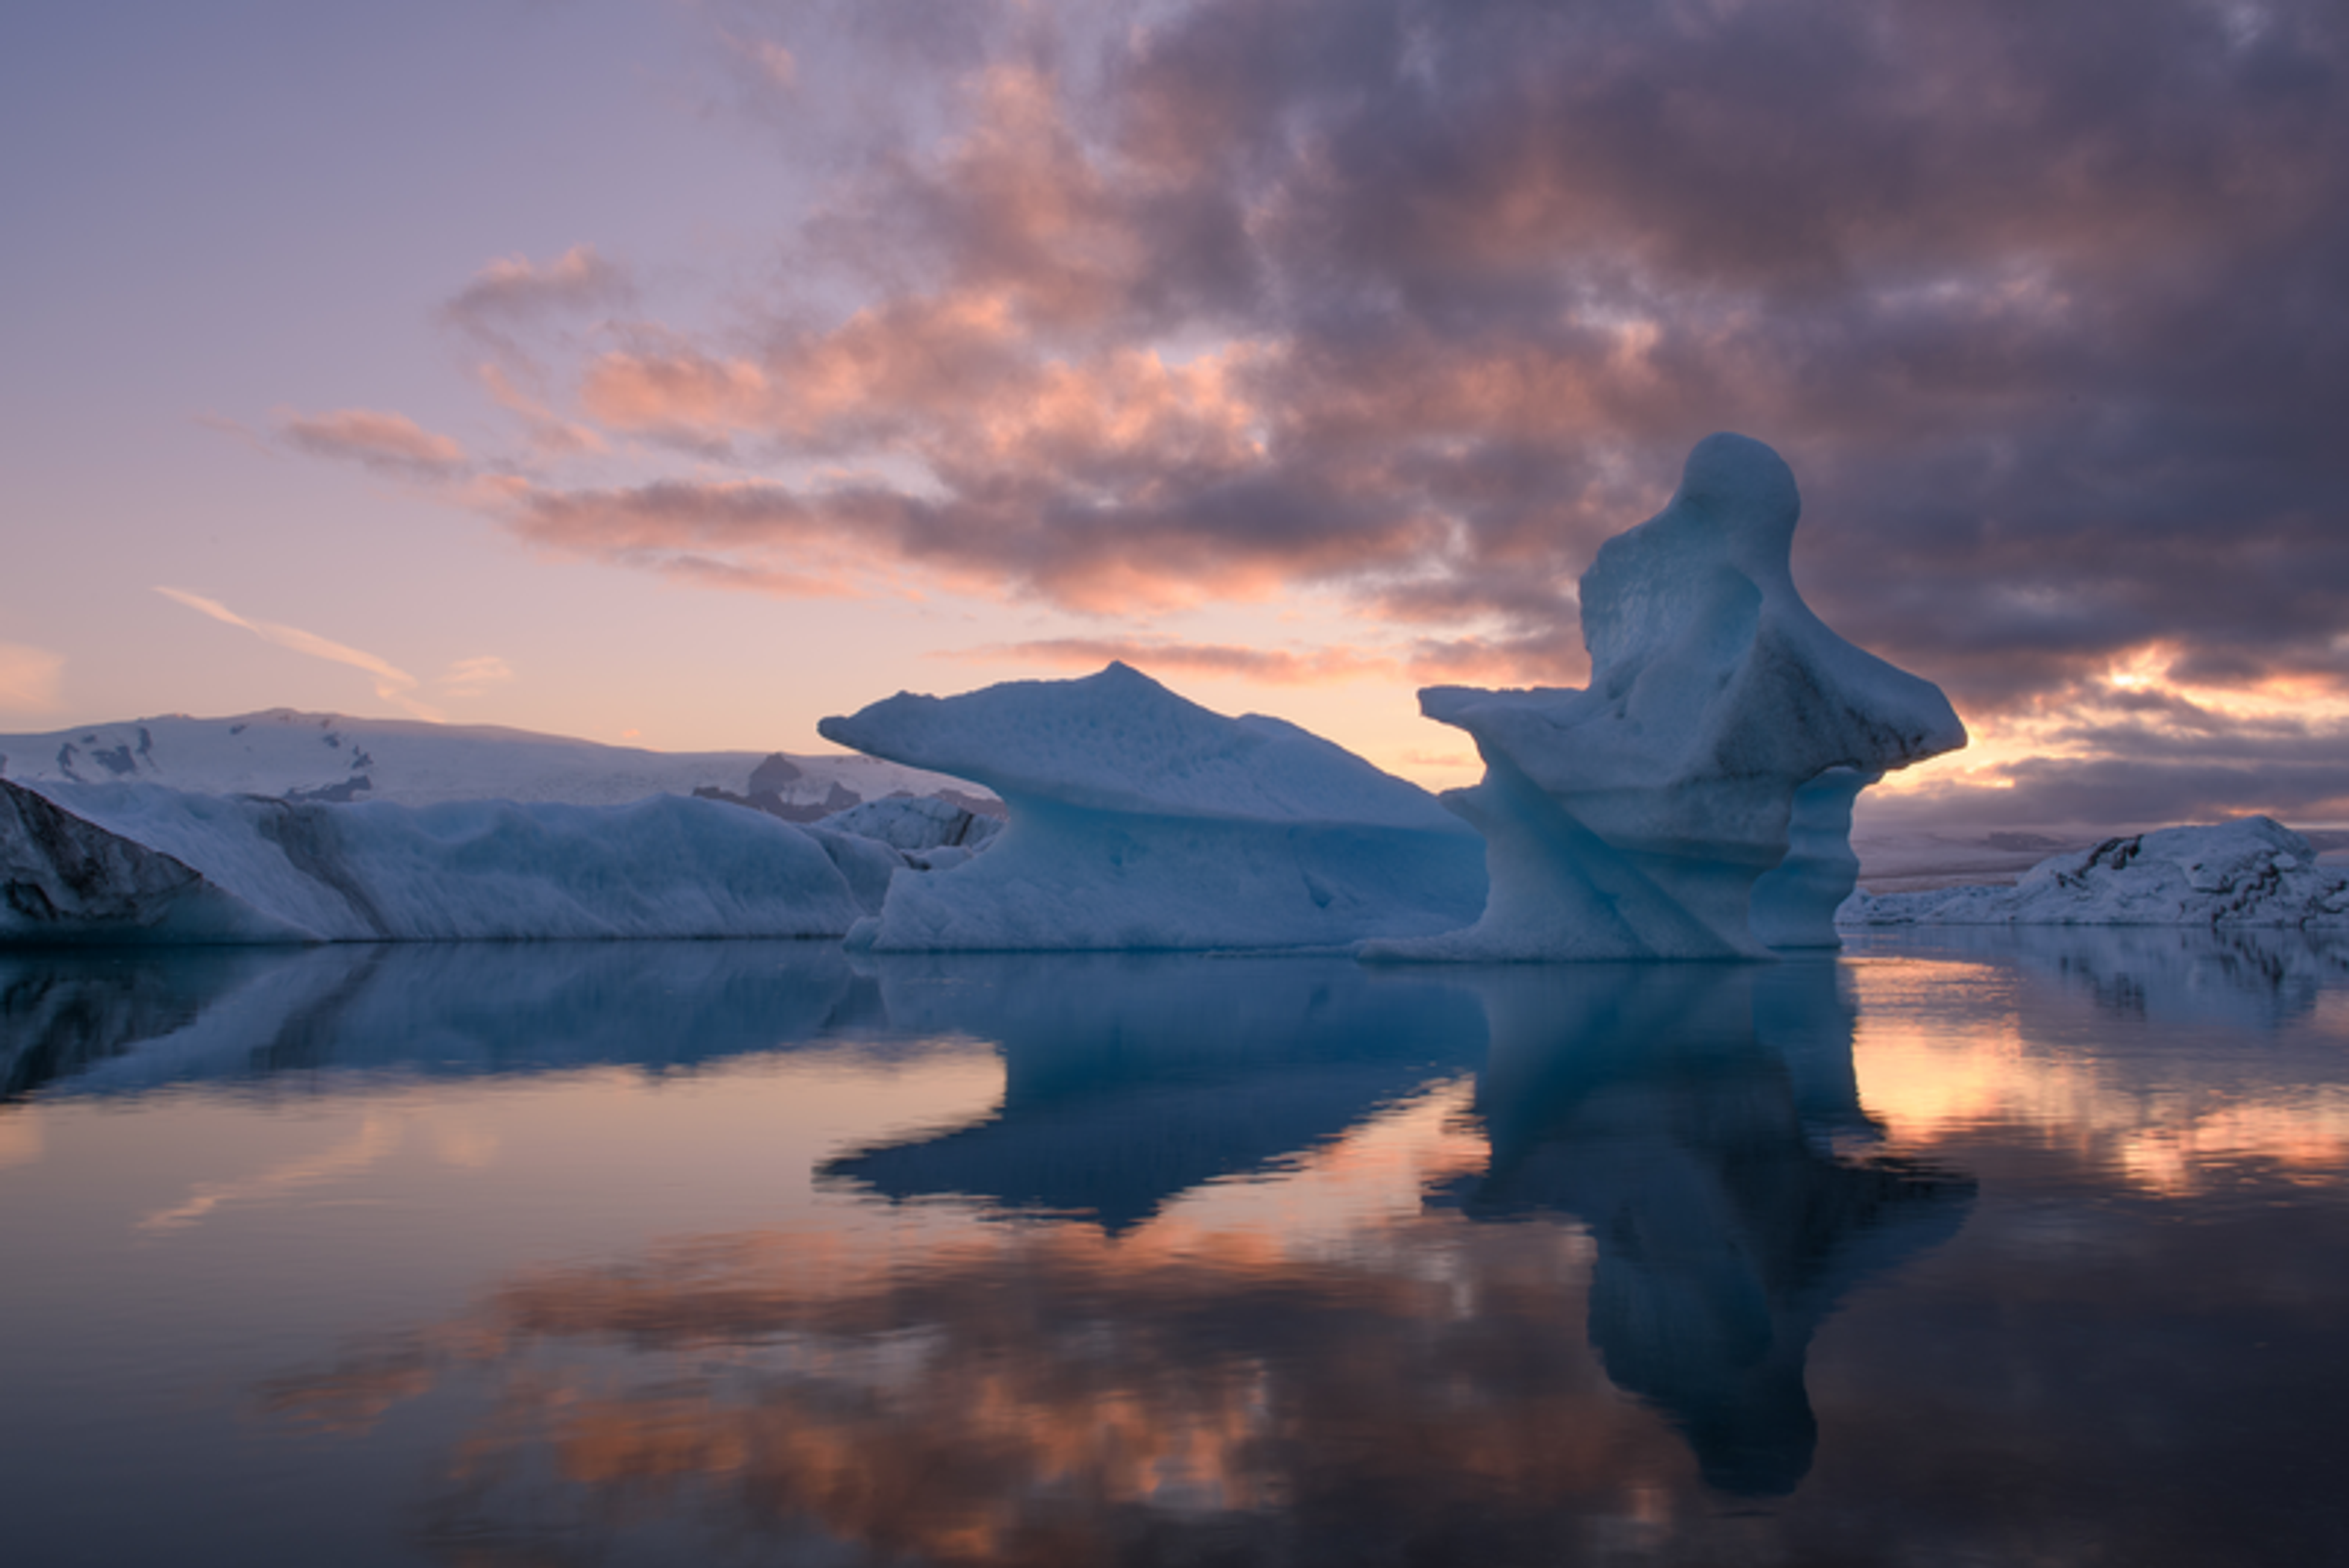 Icebergs on the Jökulssárlón lagoon during sunset.